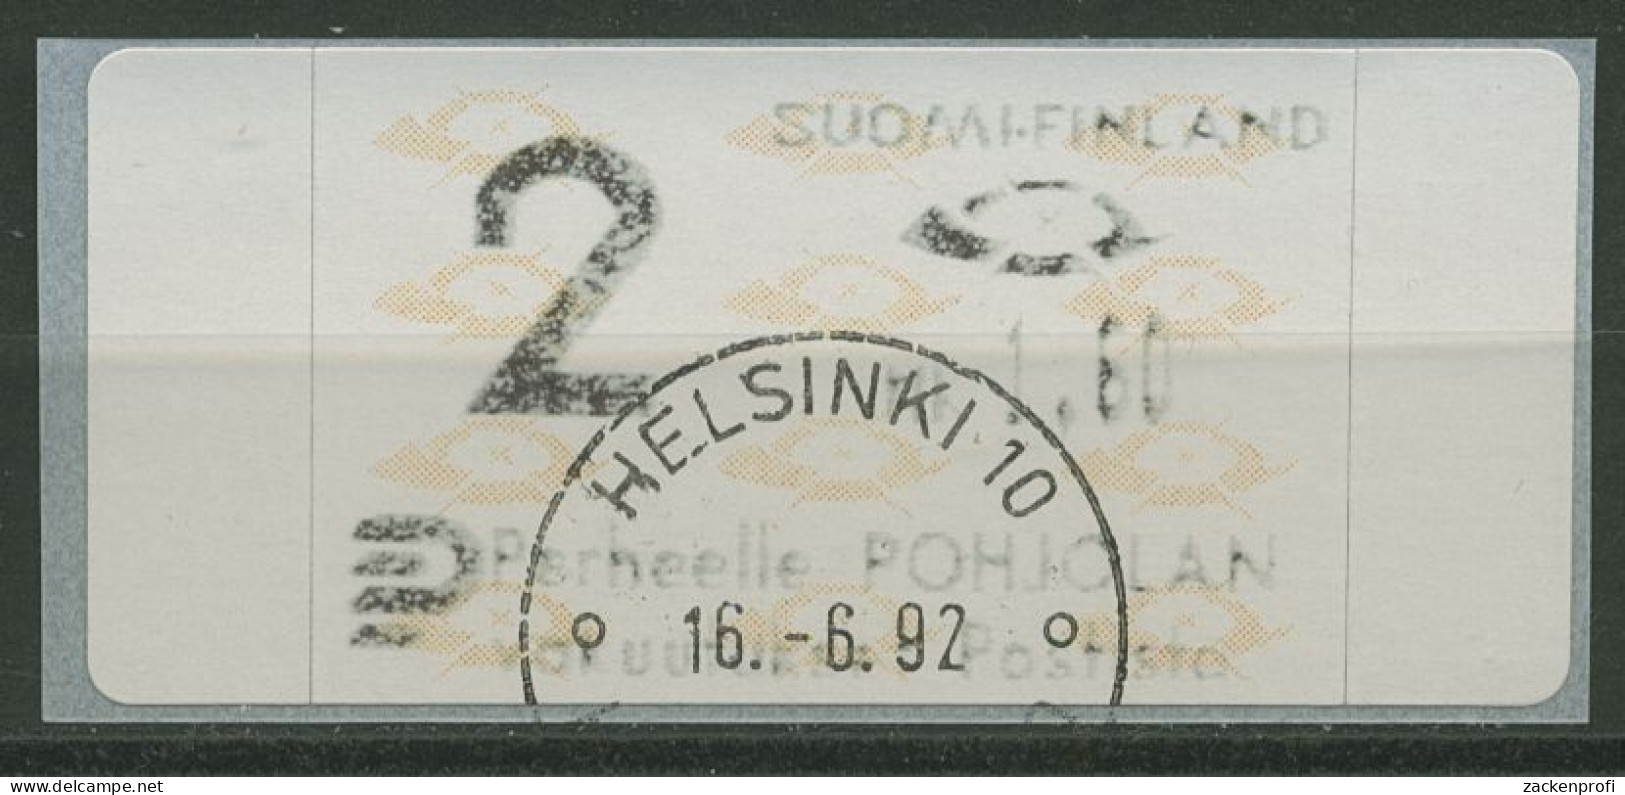 Finnland Automatenmarken 1992 Posthörner Einzelwert ATM 12.3 Z2 Gestempelt - Automatenmarken [ATM]